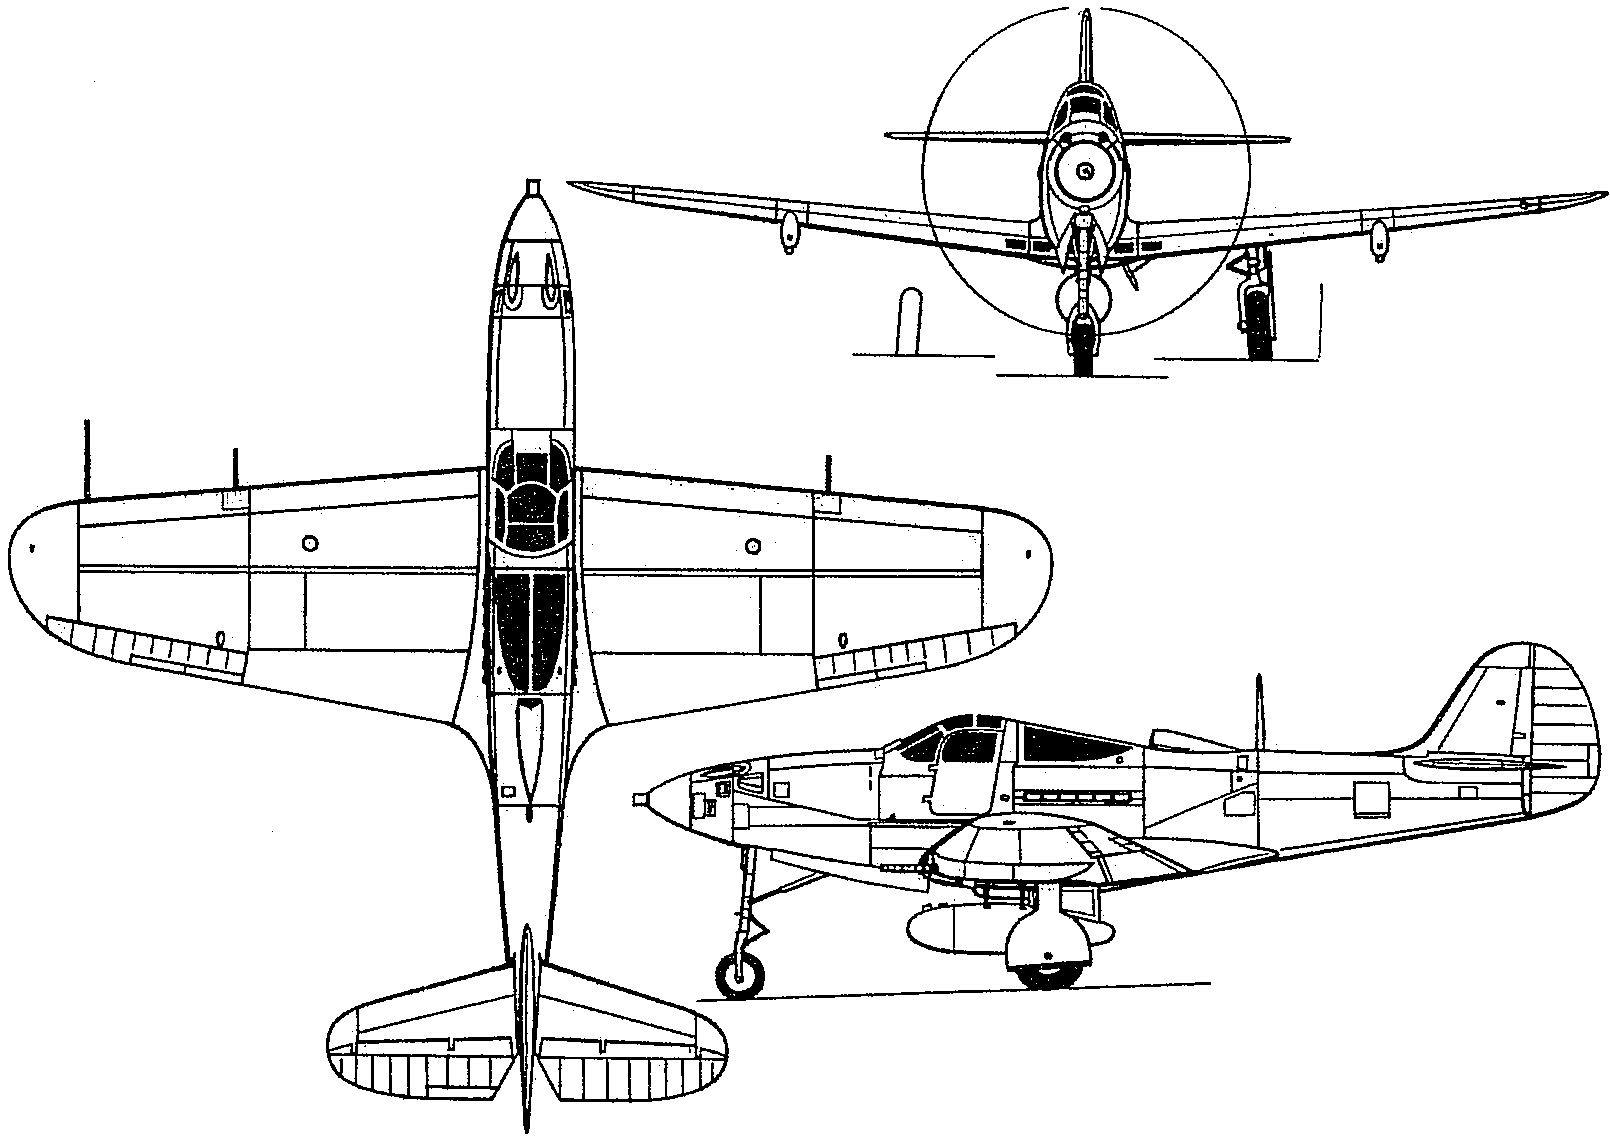 Bell p-39 airacobra — википедия. что такое bell p-39 airacobra